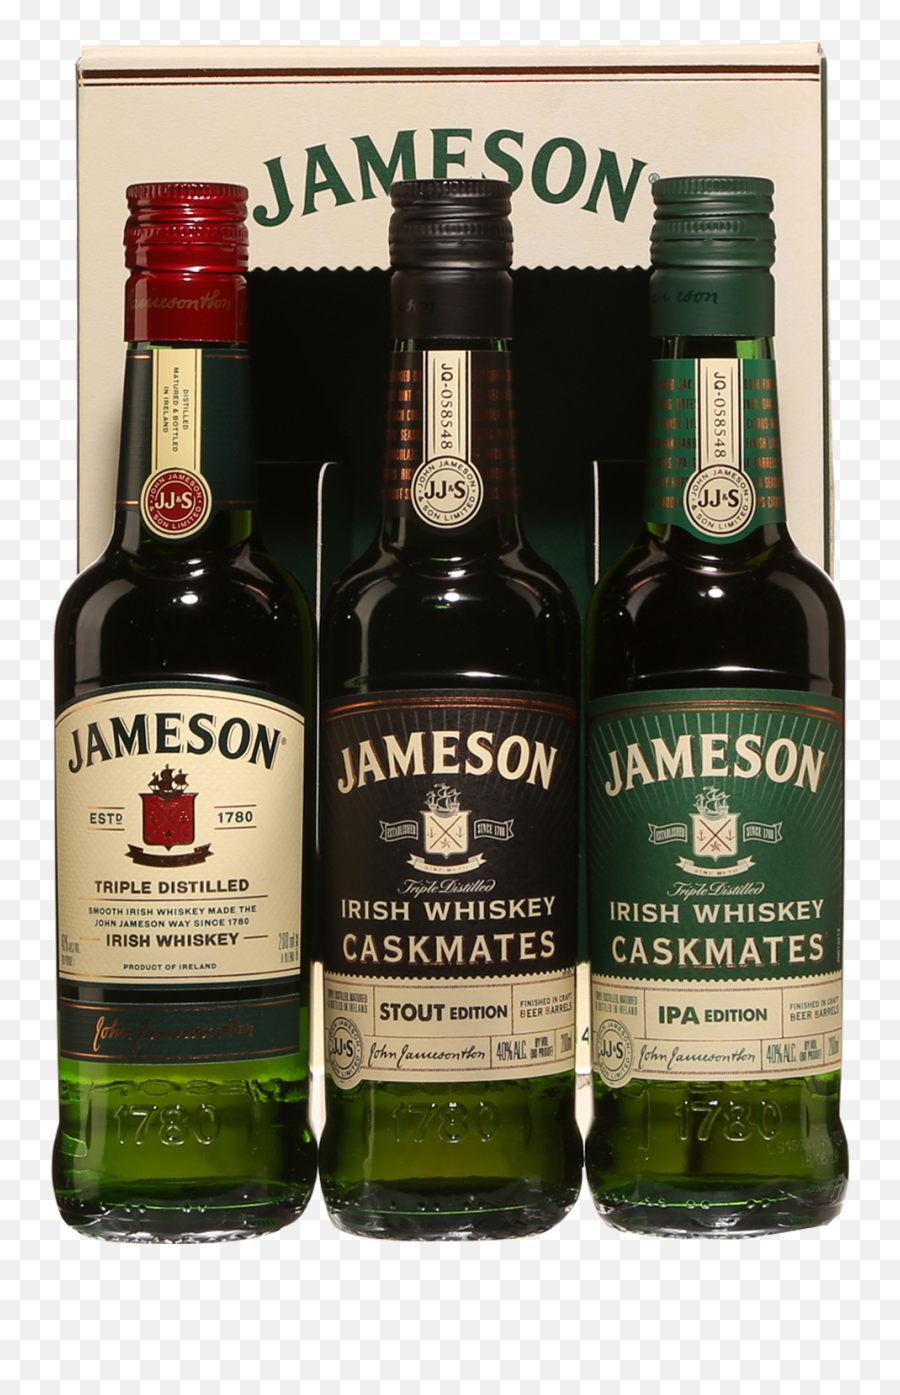 Jameson Irish Whiskey Family Wire Gift Pack 3 X 200 Ml - Jameson Irish Whiskey Png,Jameson Png